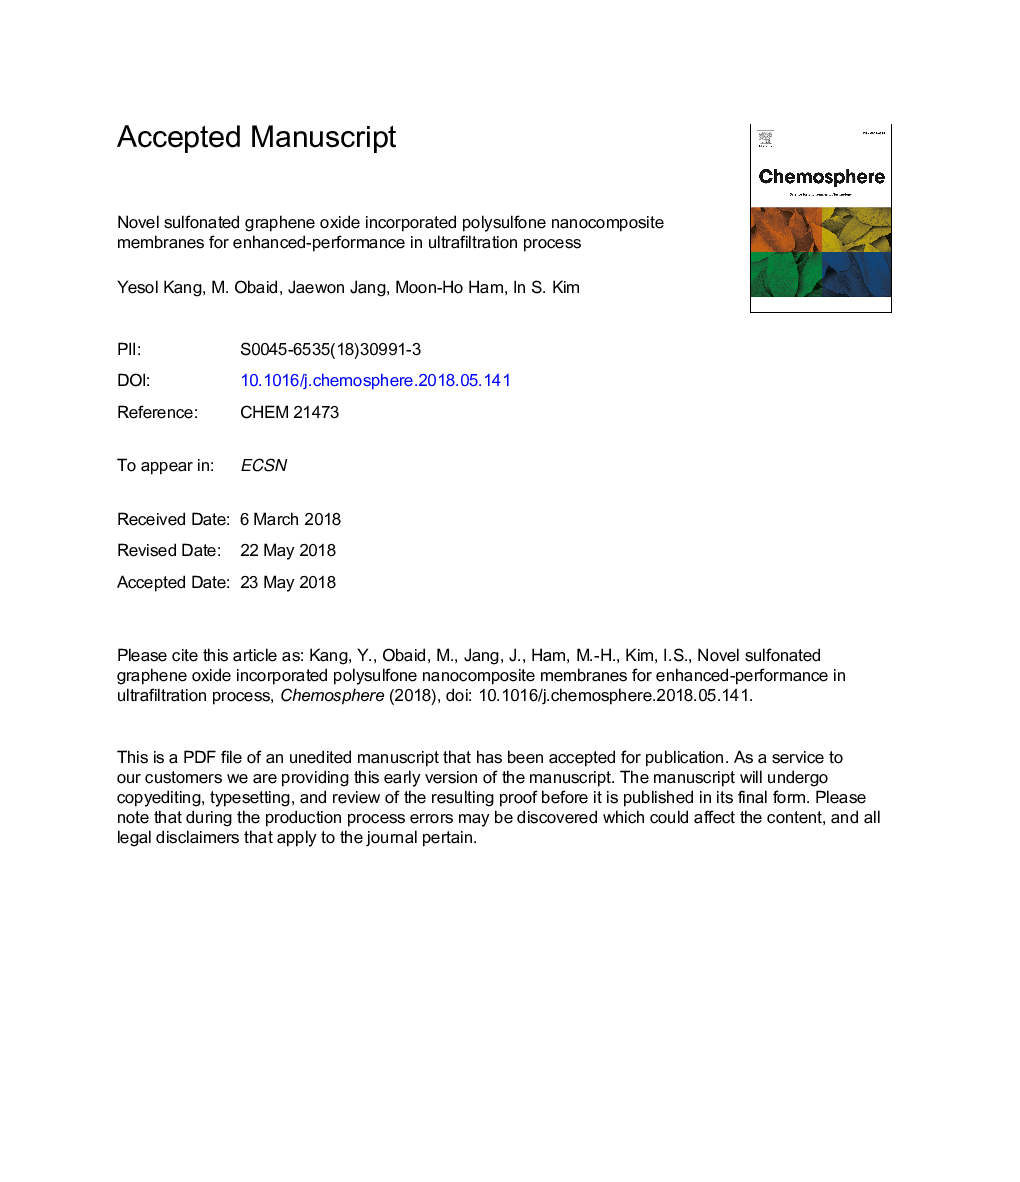 غلظت نانوکامپوزیت پلی سولفون رول سولفونیک اکسید گرافن برای افزایش عملکرد در فرایند اولترافیلتراسیون 